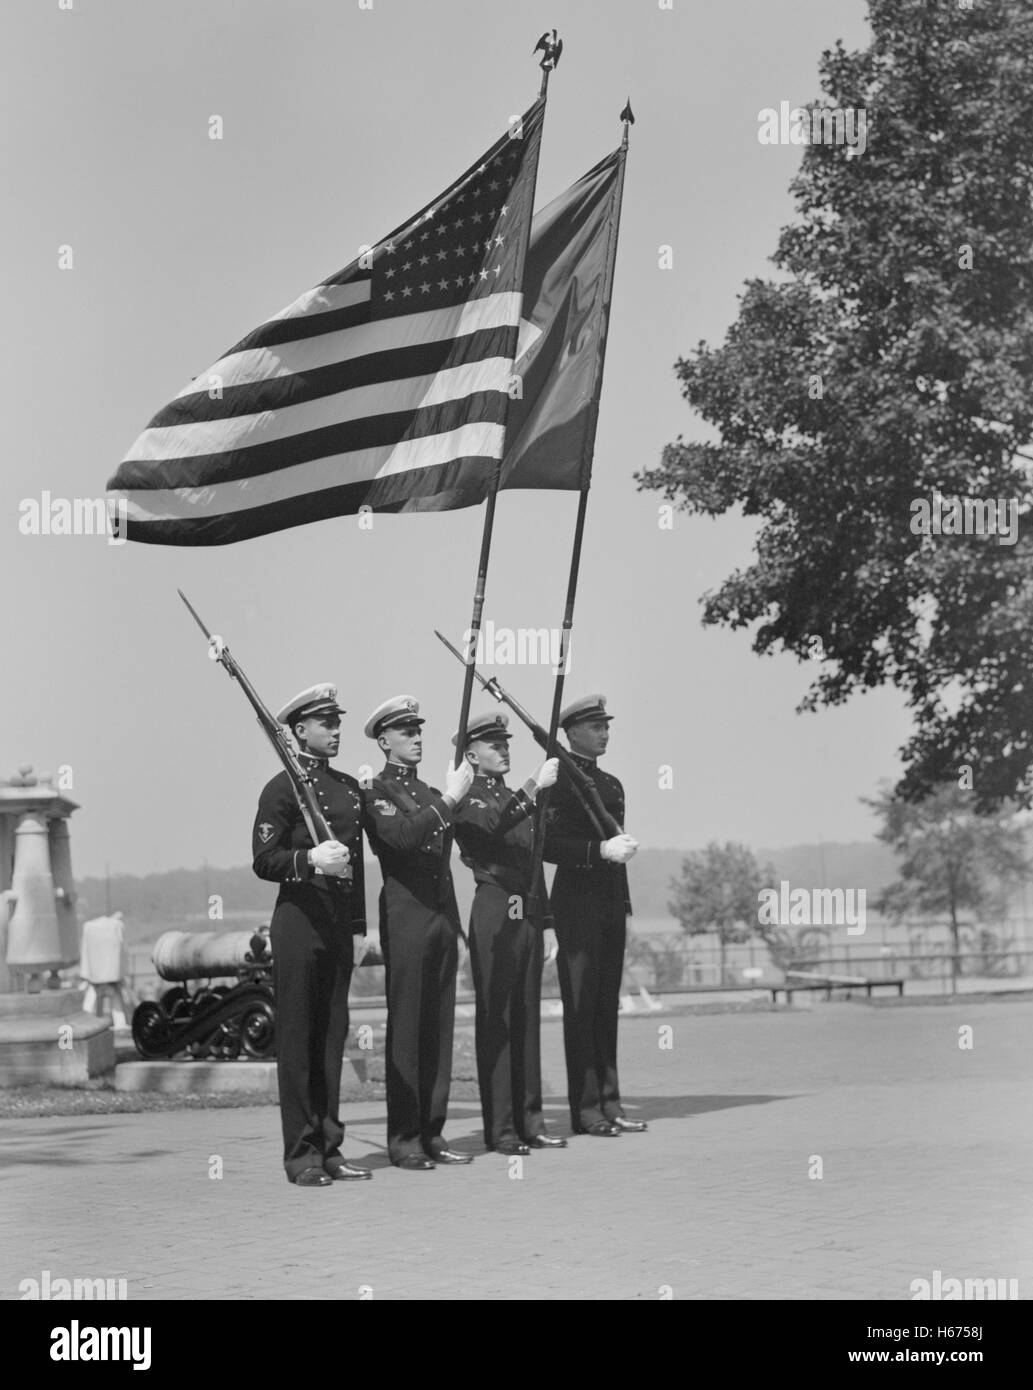 Les aspirants de Color Guard, U.S. Naval Academy, Annapolis, Maryland, USA, par le Lieutenant Whitman pour Office of War Information, Juillet 1942 Banque D'Images